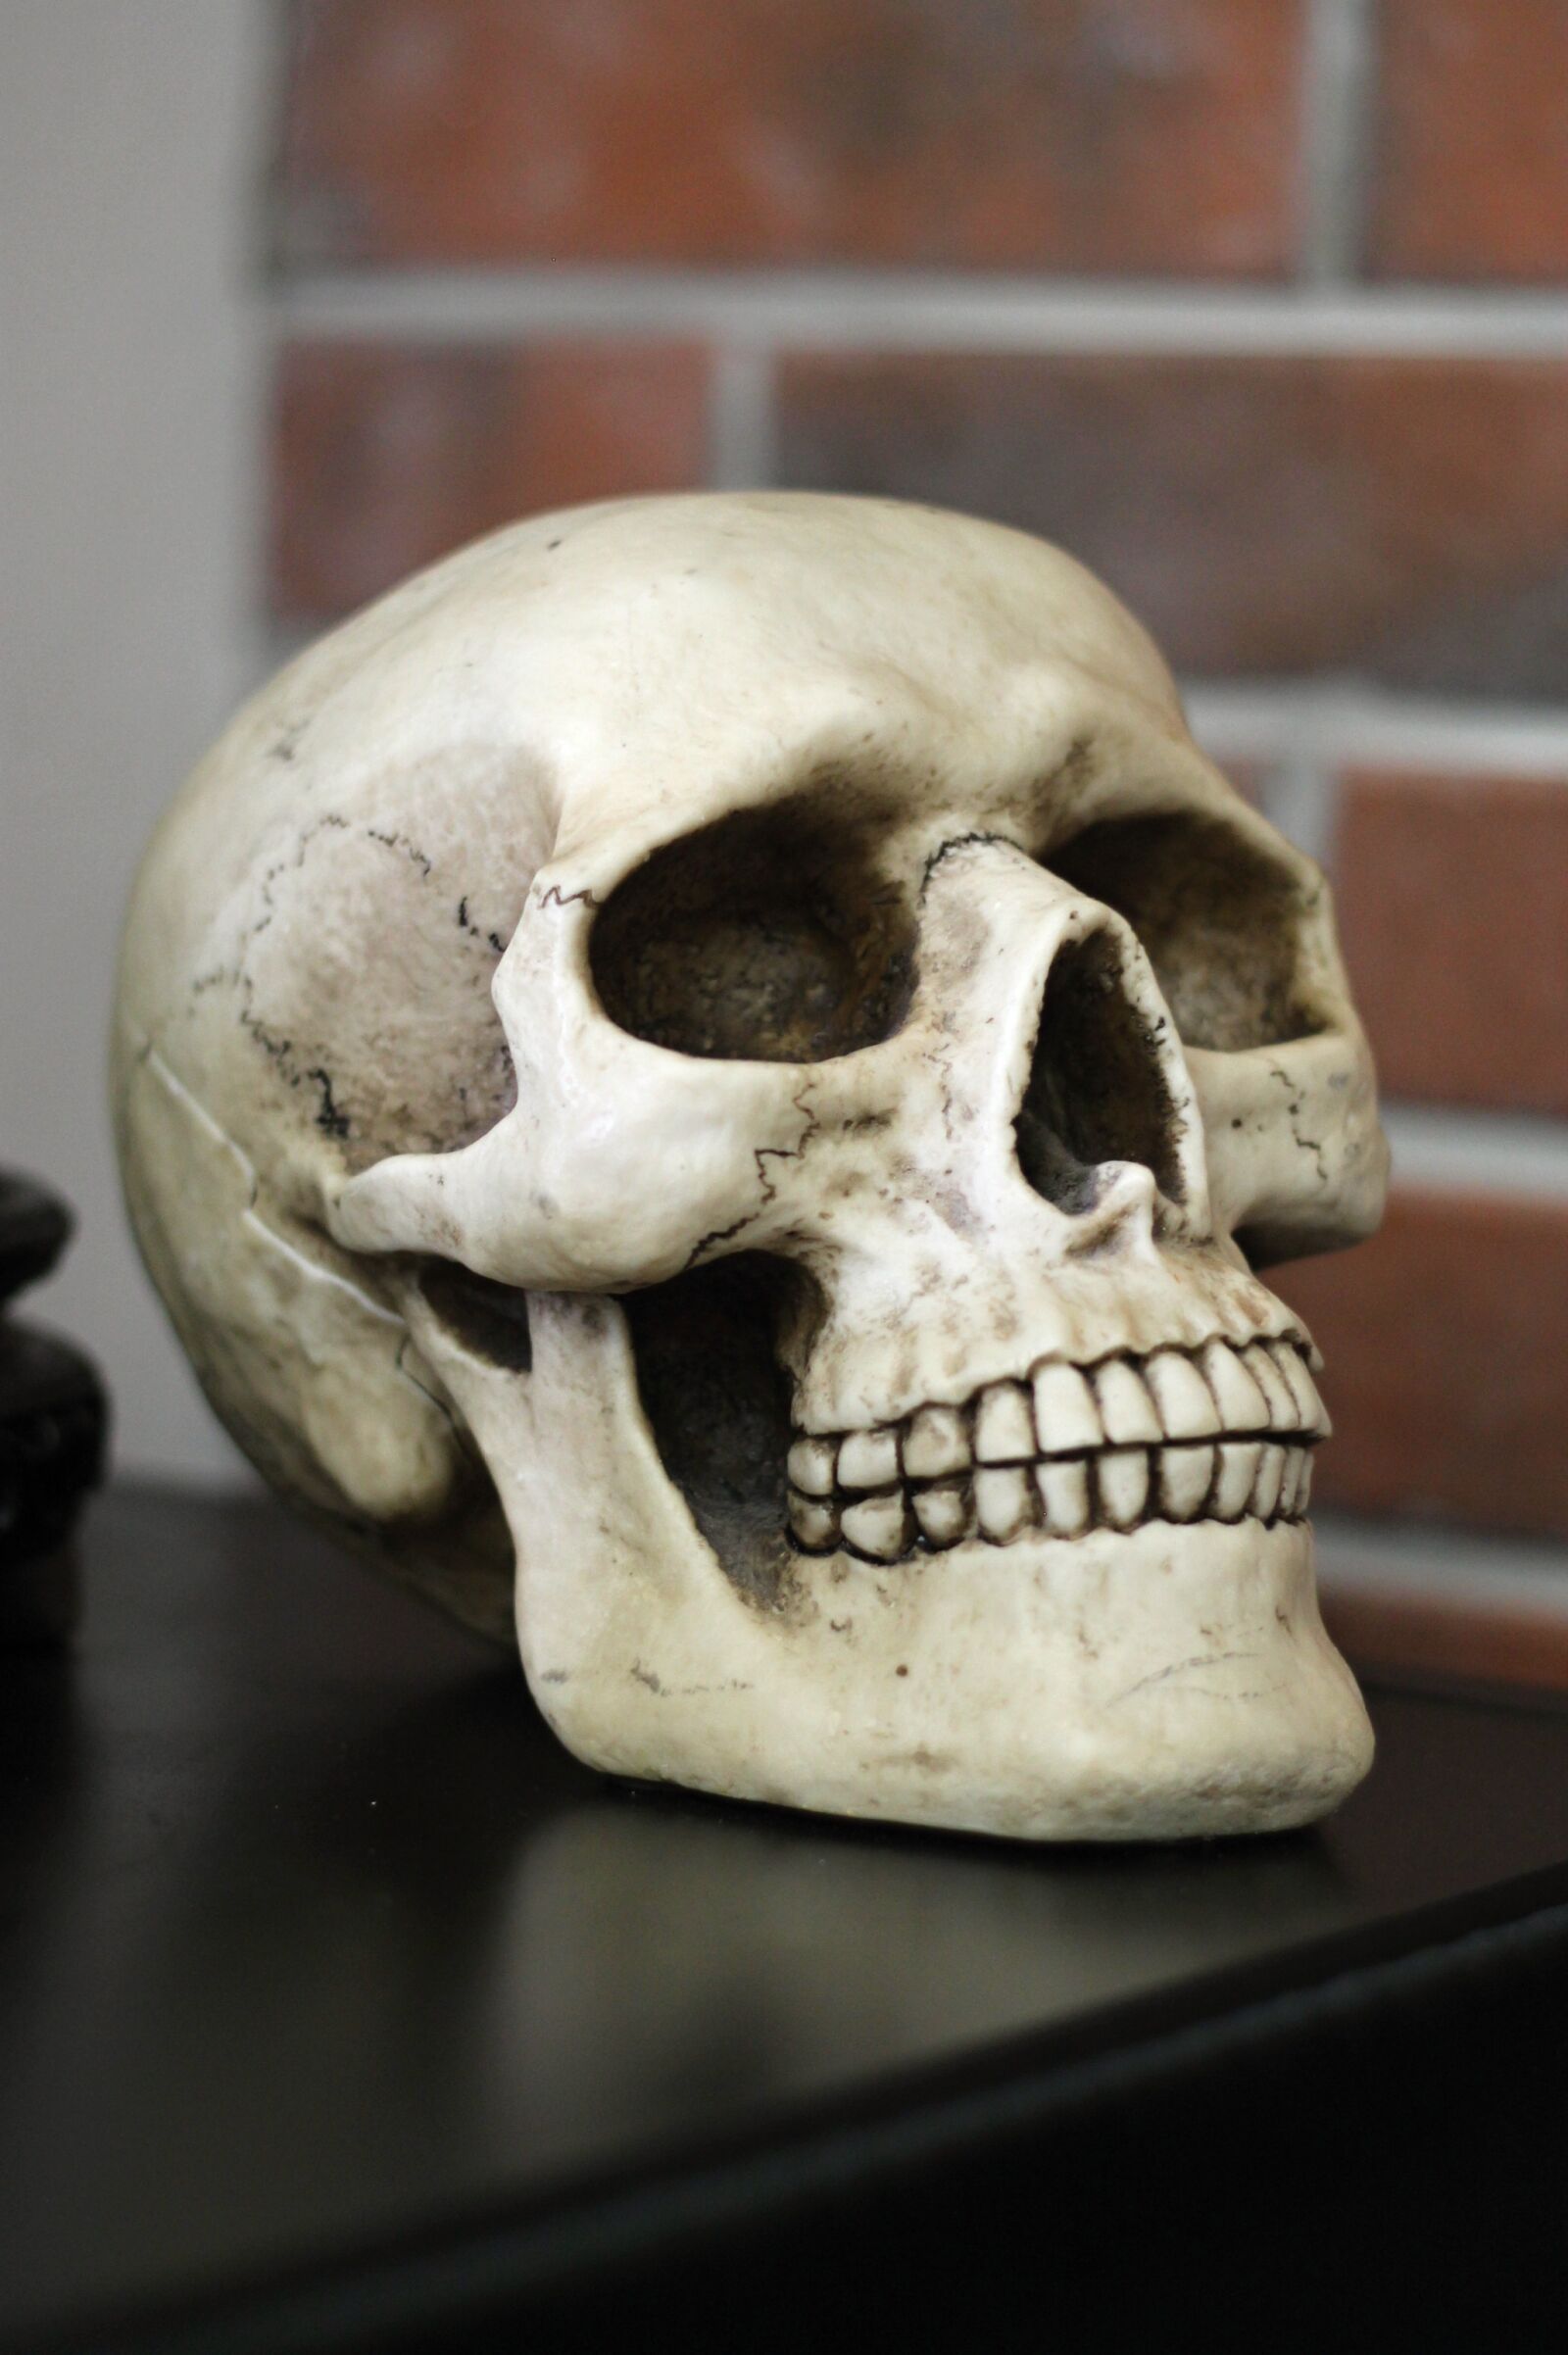 Canon EF 50mm F1.8 II sample photo. Skull, human head, teeth photography